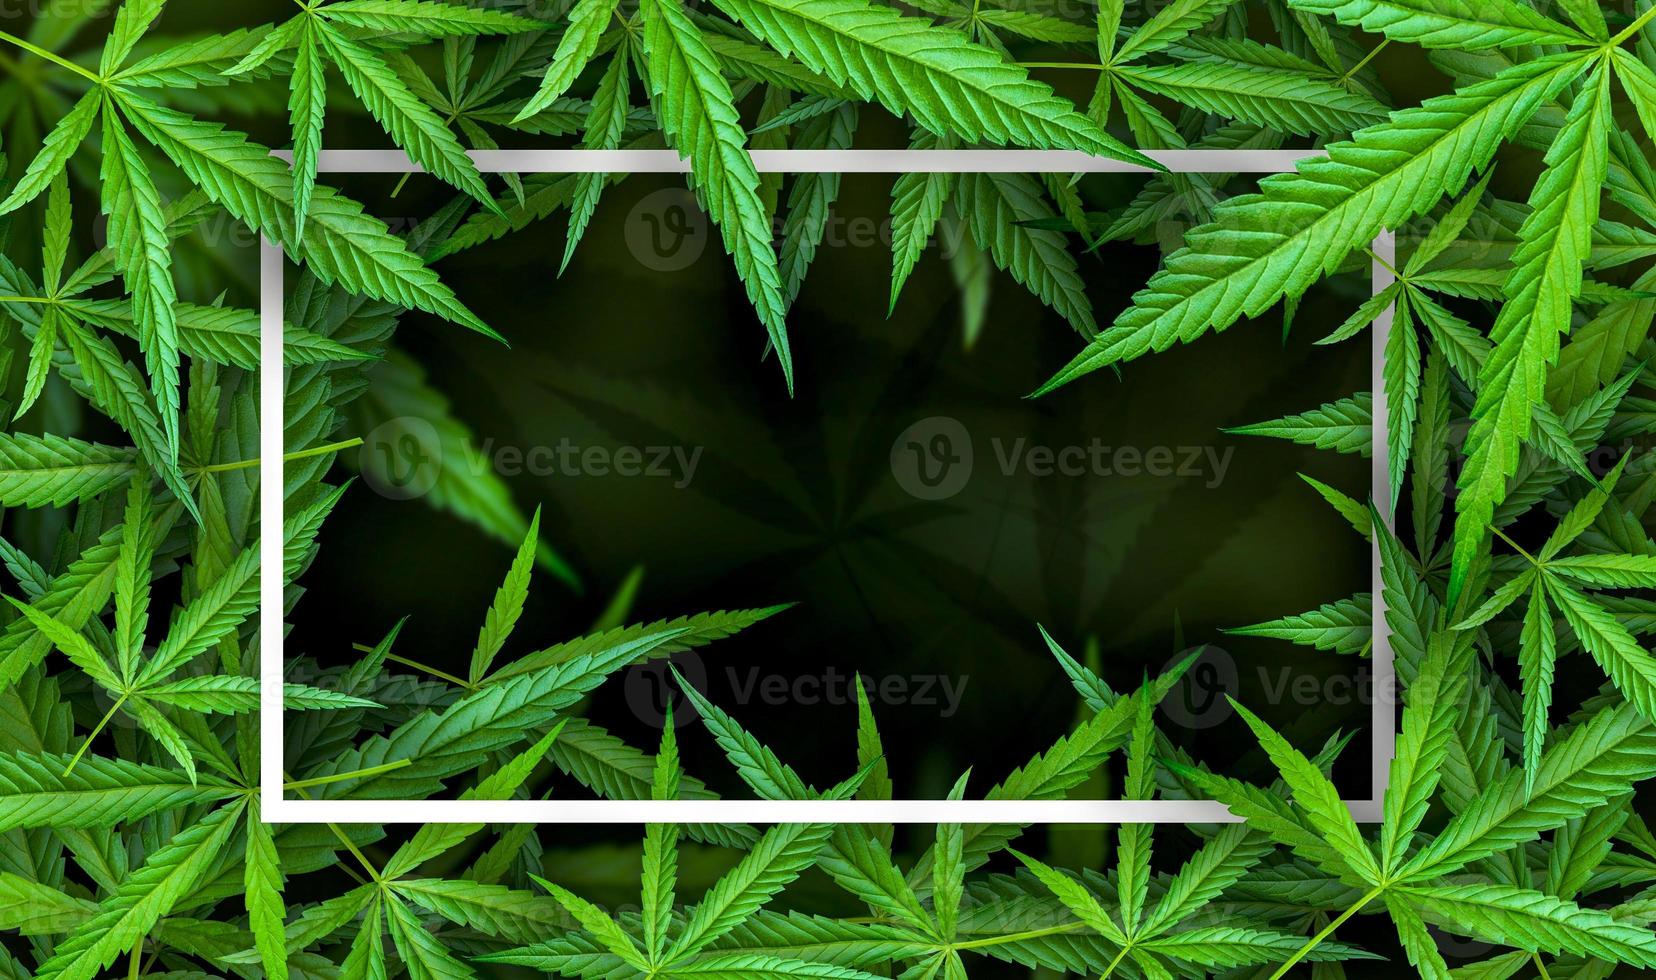 marihuanablad illustraties op cannabis donkere achtergrond foto